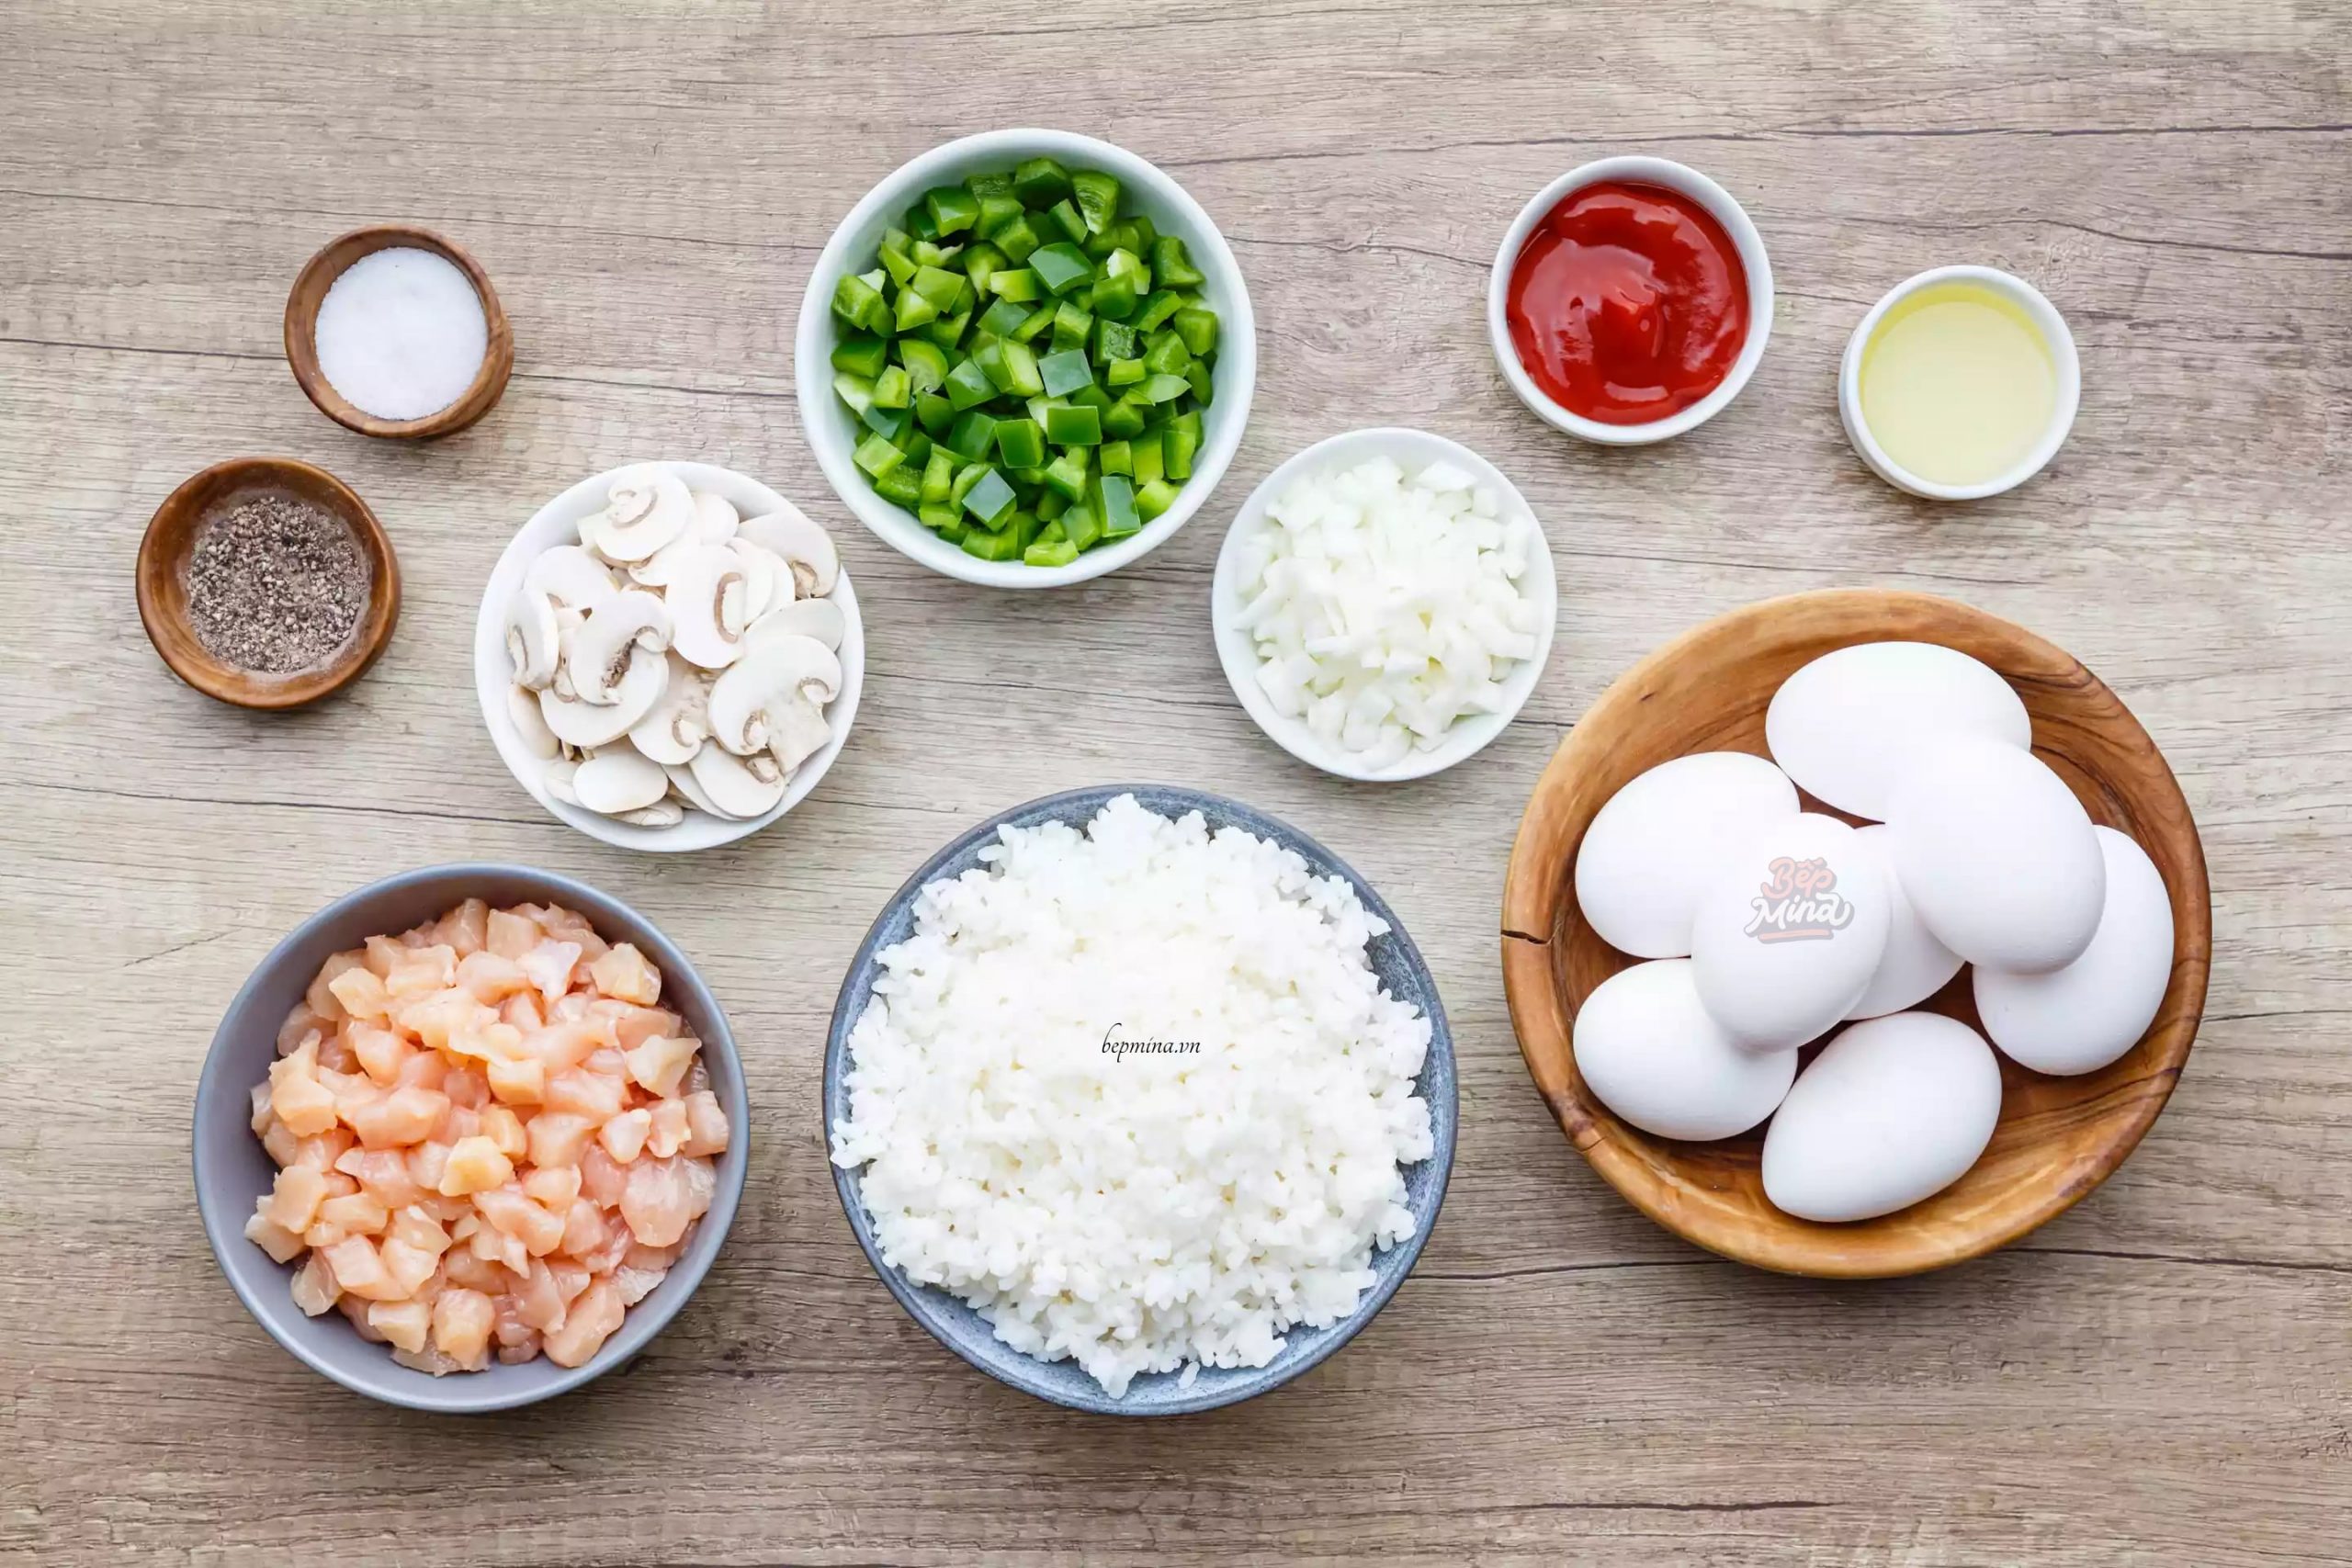 Nguyên liệu cho món cơm rang trứng kiểu Nhật